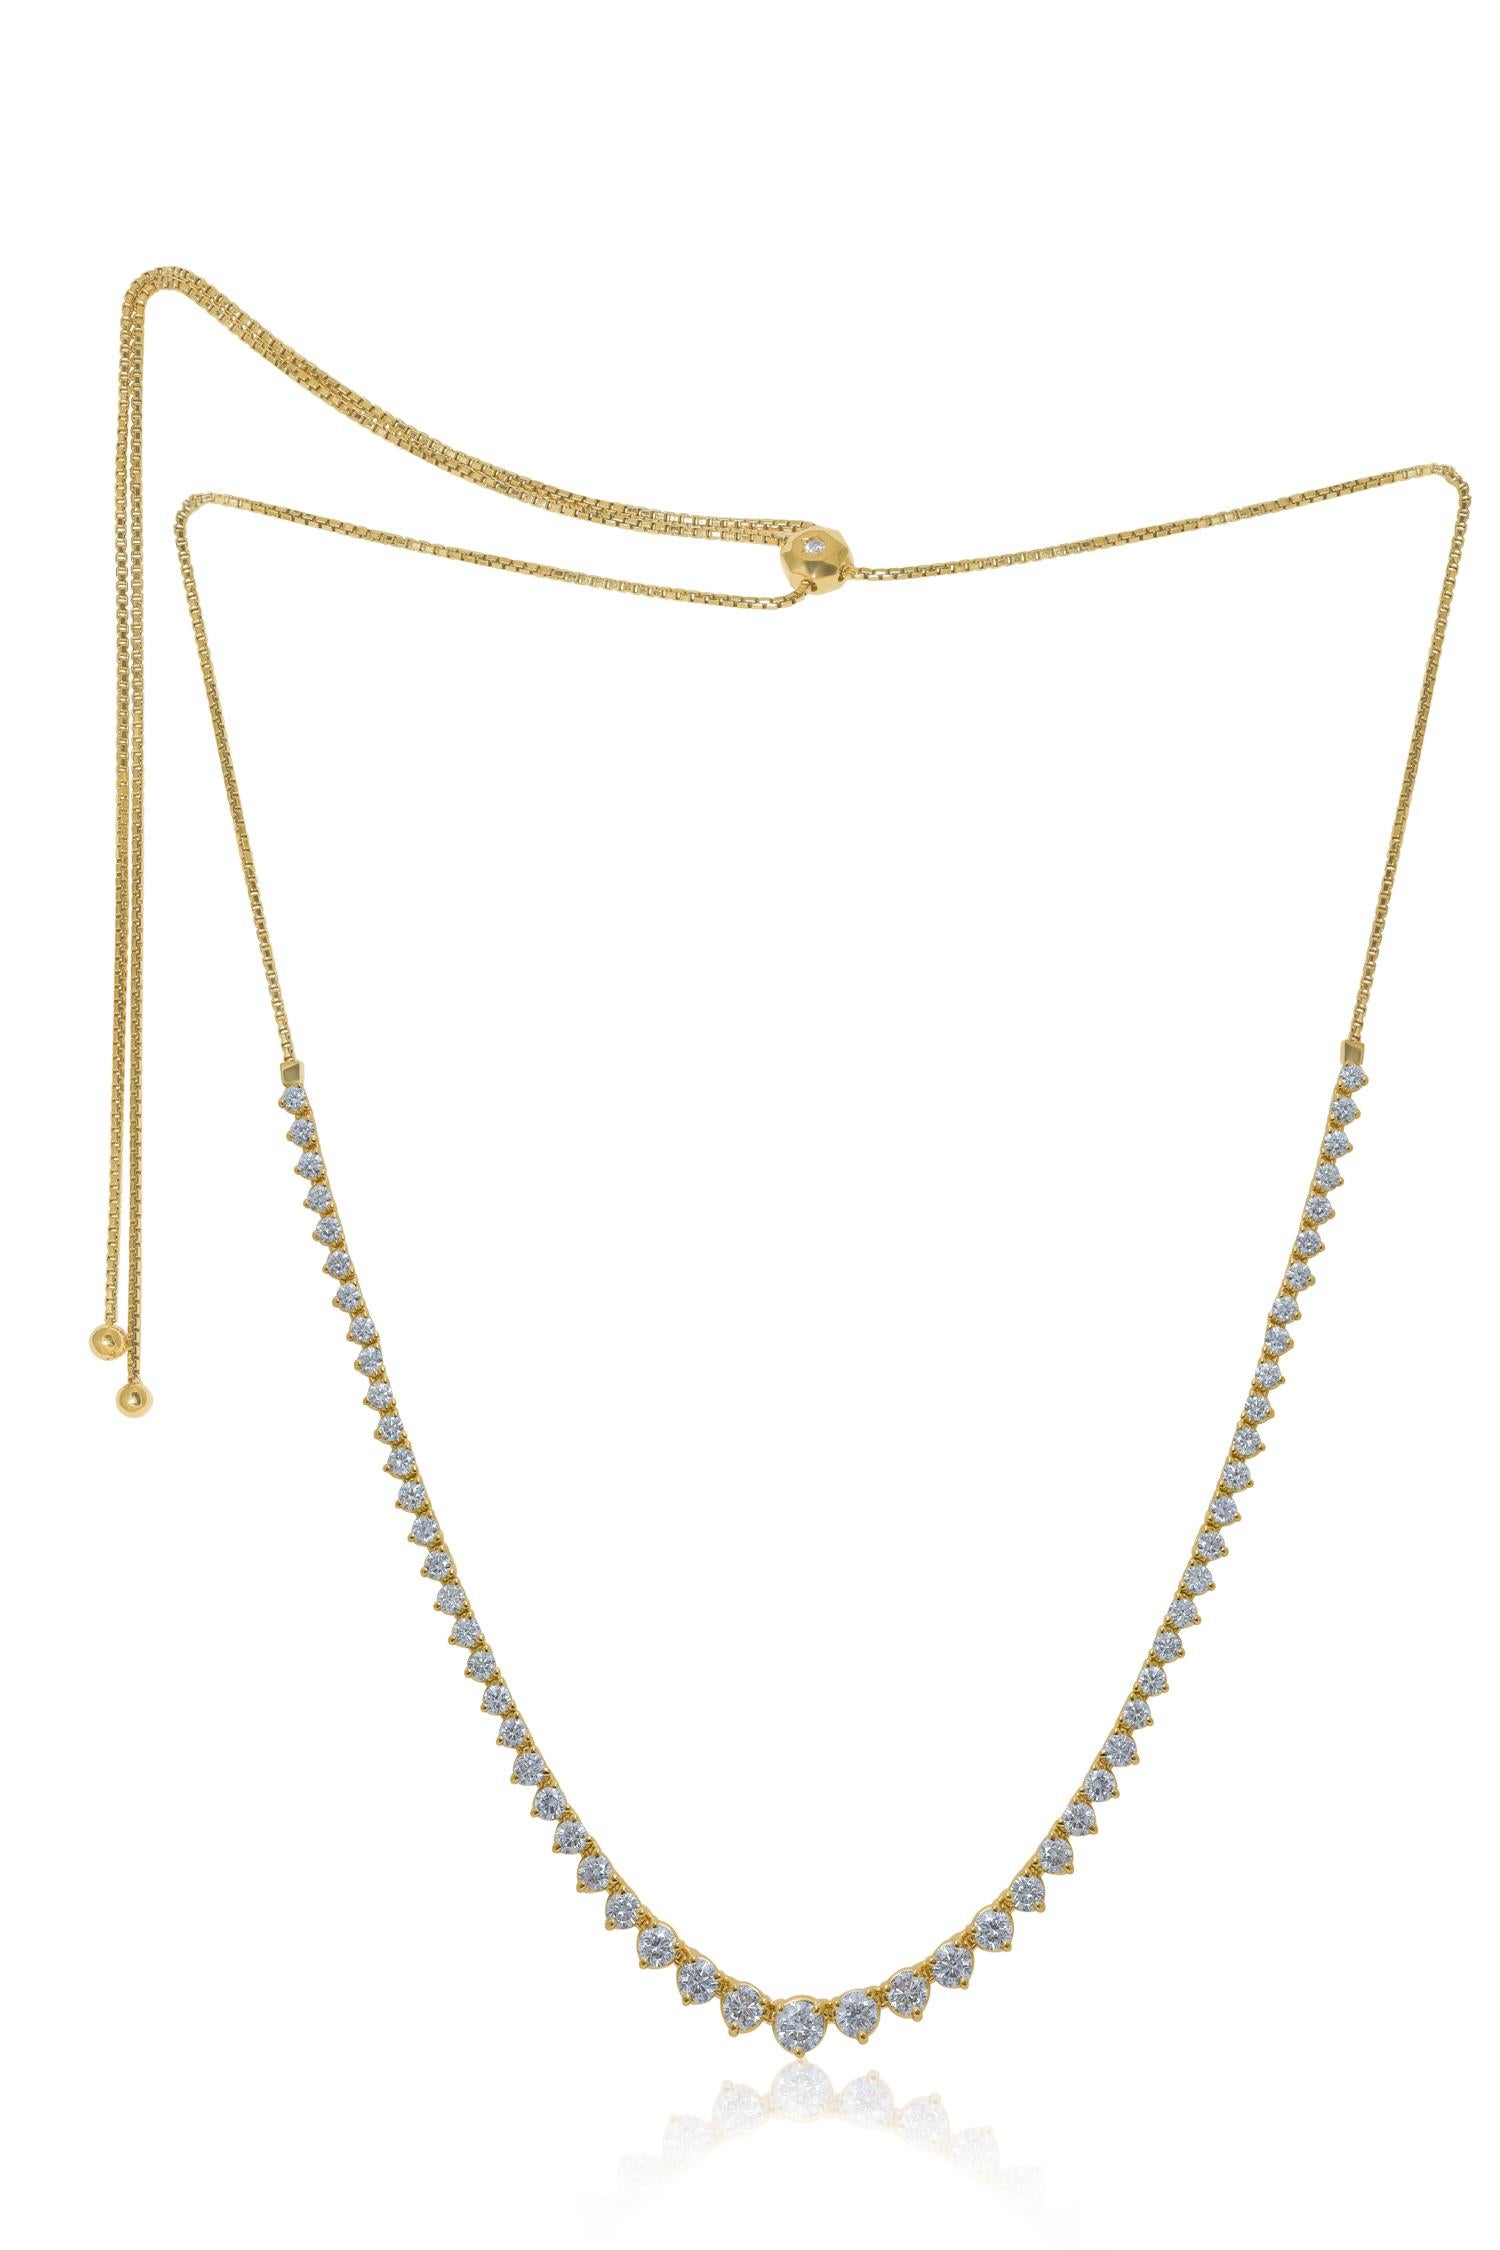 Benutzerdefinierte 14k Gelbgold abgestuften halben Weg Bolo Tennis Halskette mit 3,50 cts runde Diamanten 3 Prong Einstellung 14-32